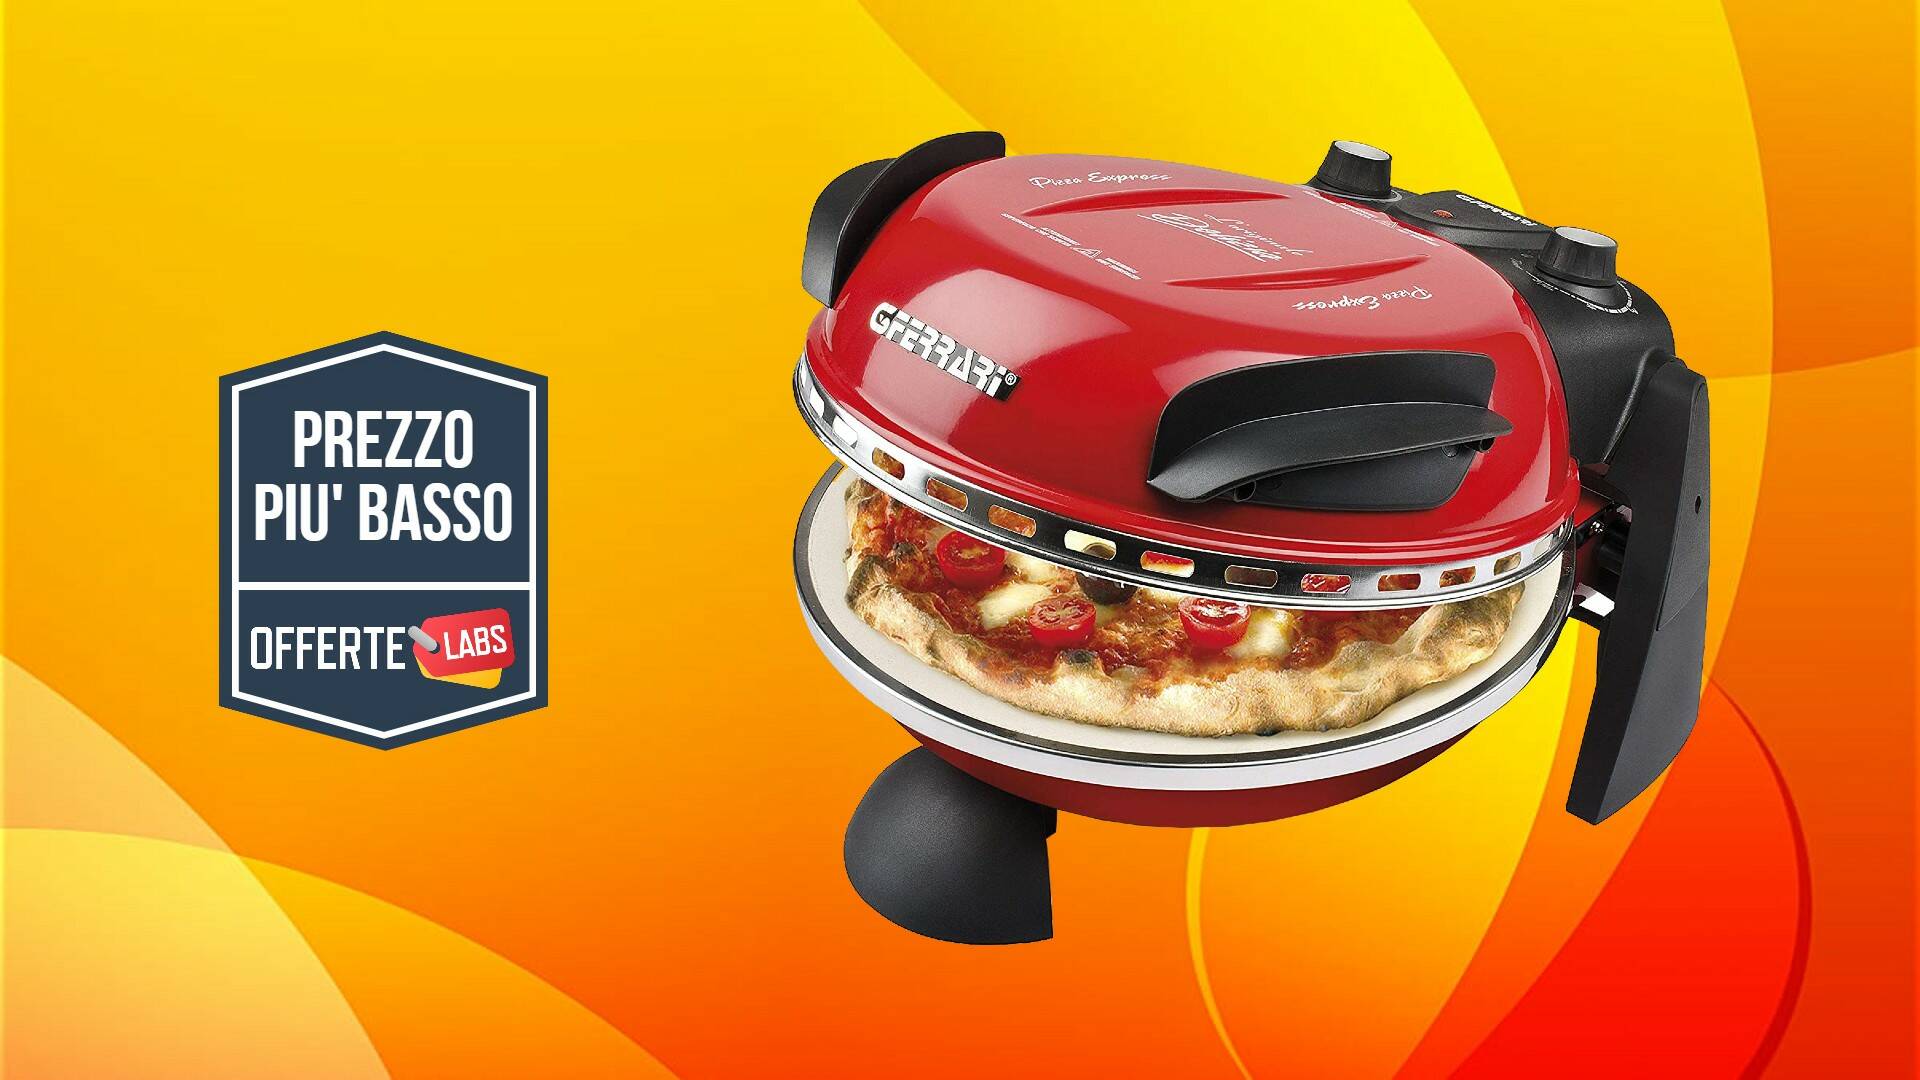 Forno Pizza G3 Ferrari, super sconto su ! - Tom's Hardware